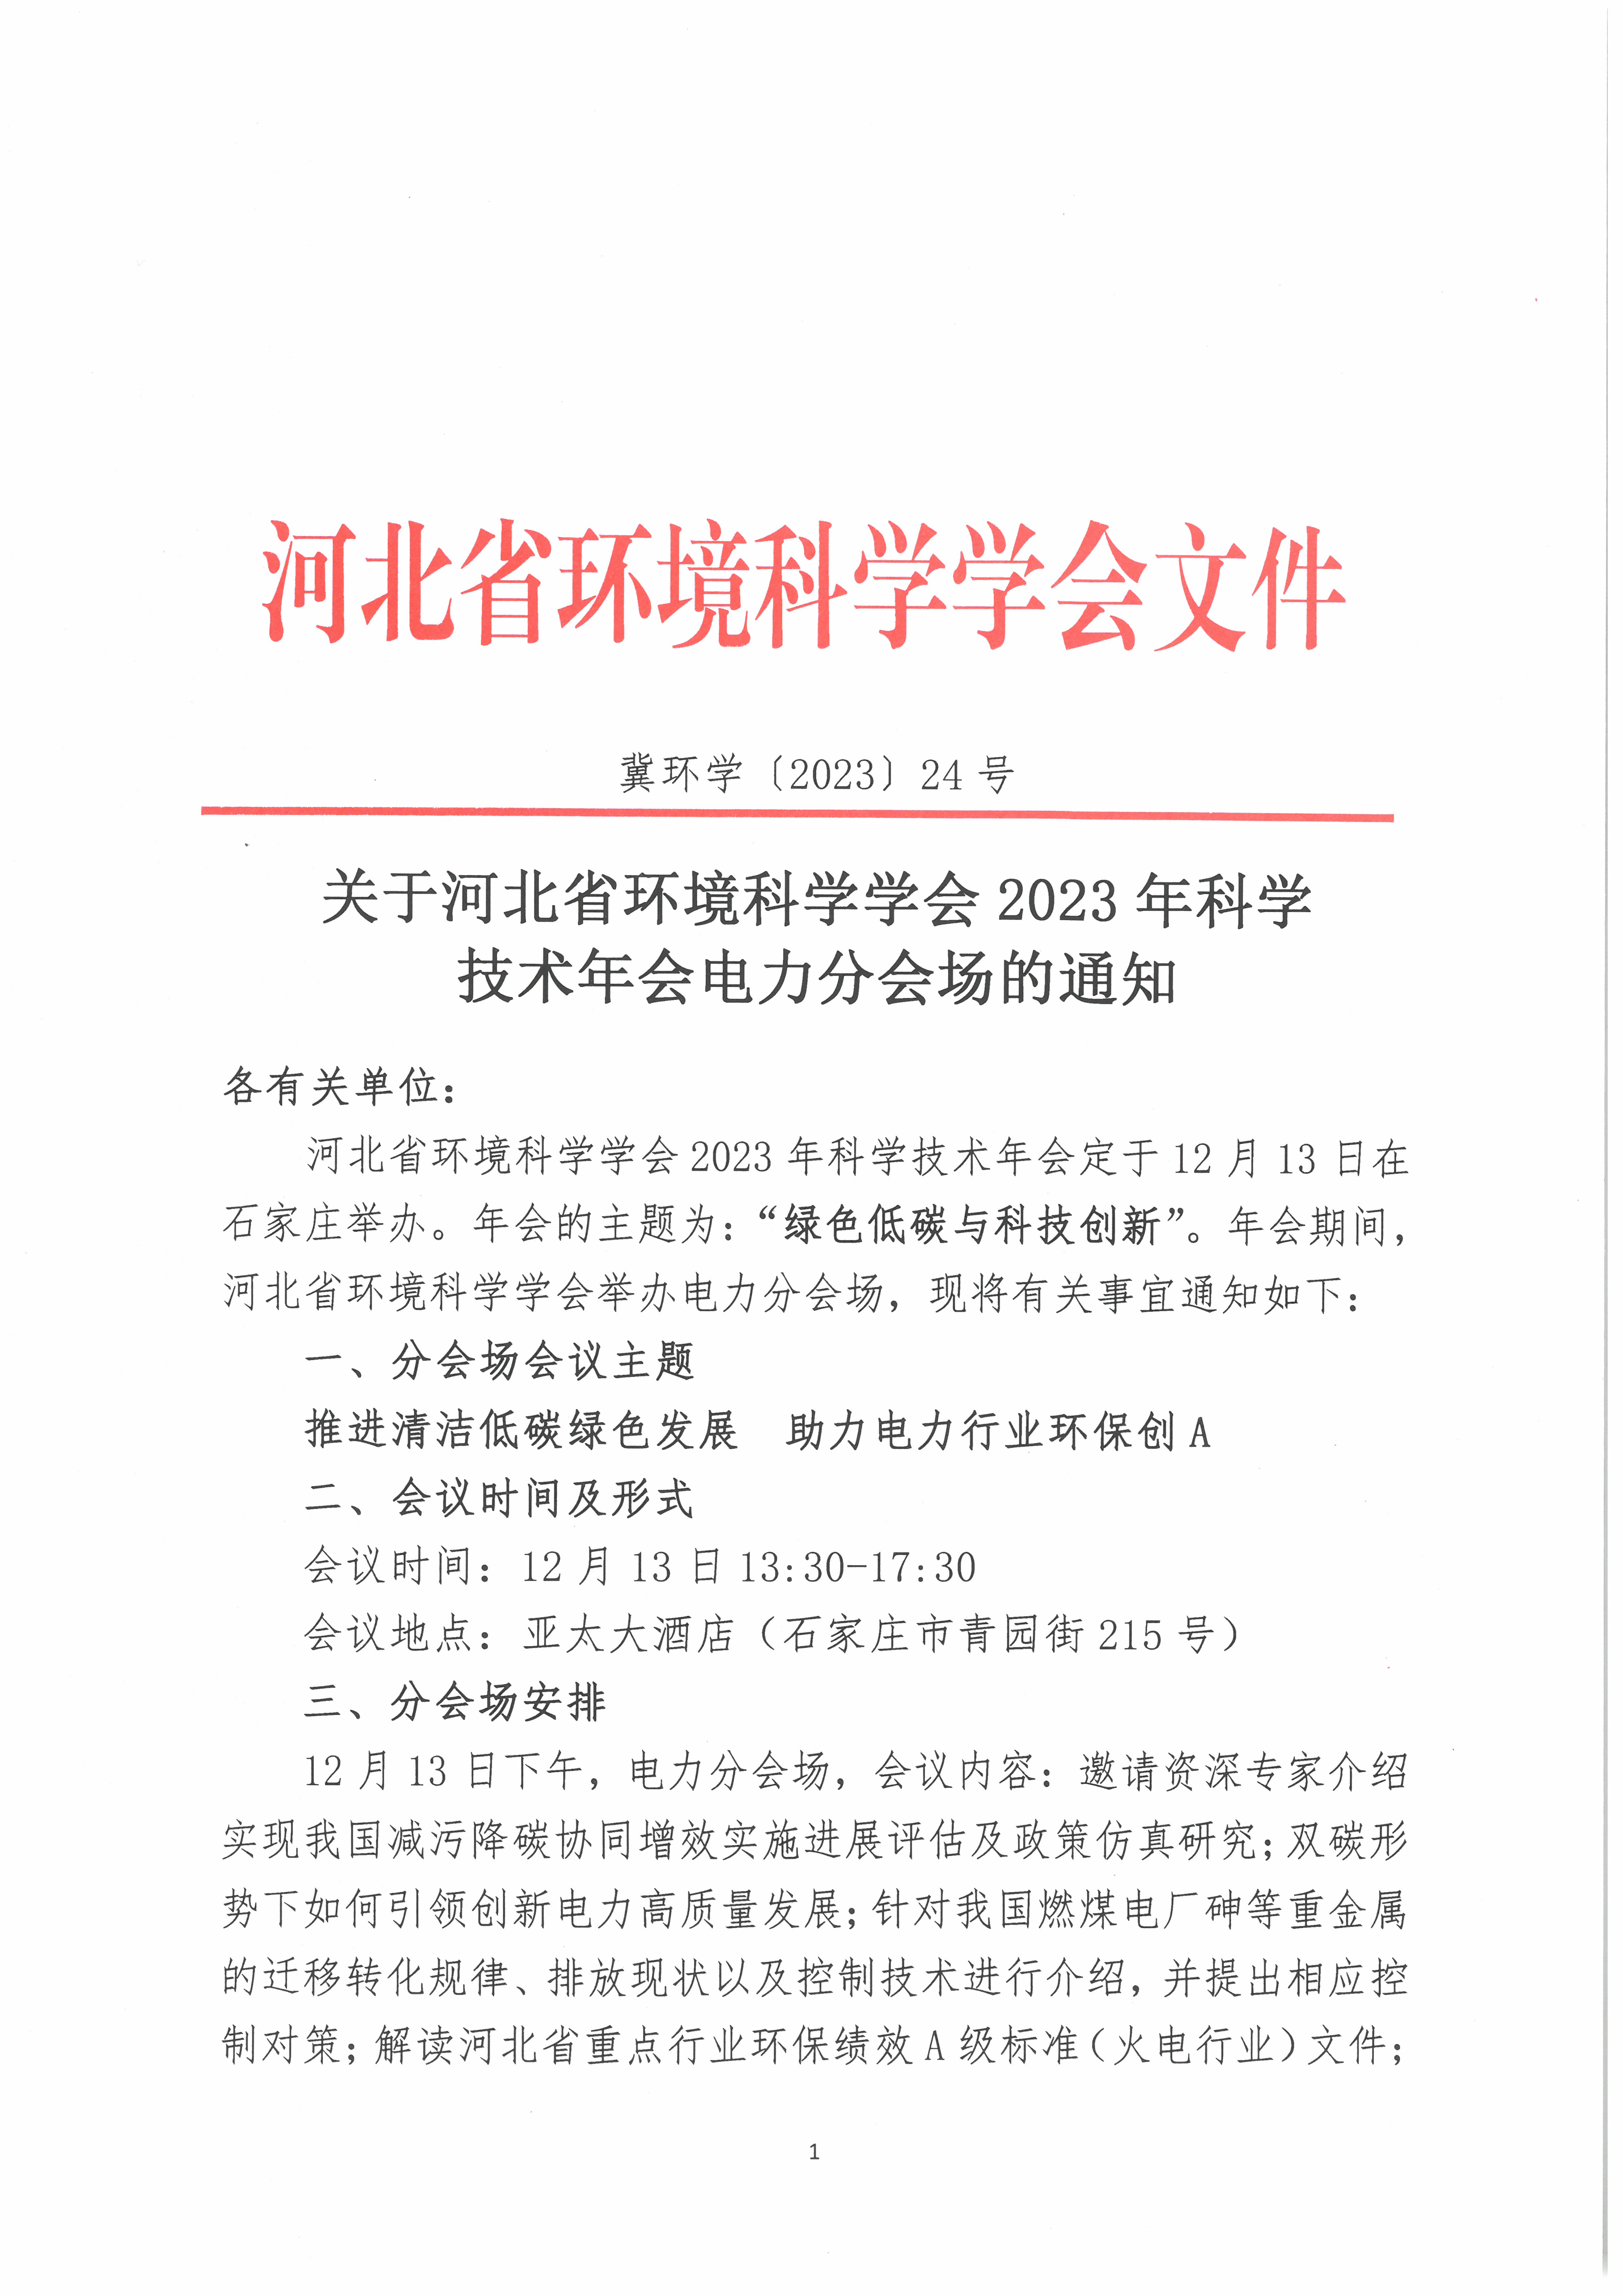 2023年河北省环境科学学会科学技术年会电力分会场通知_页面_1.jpg